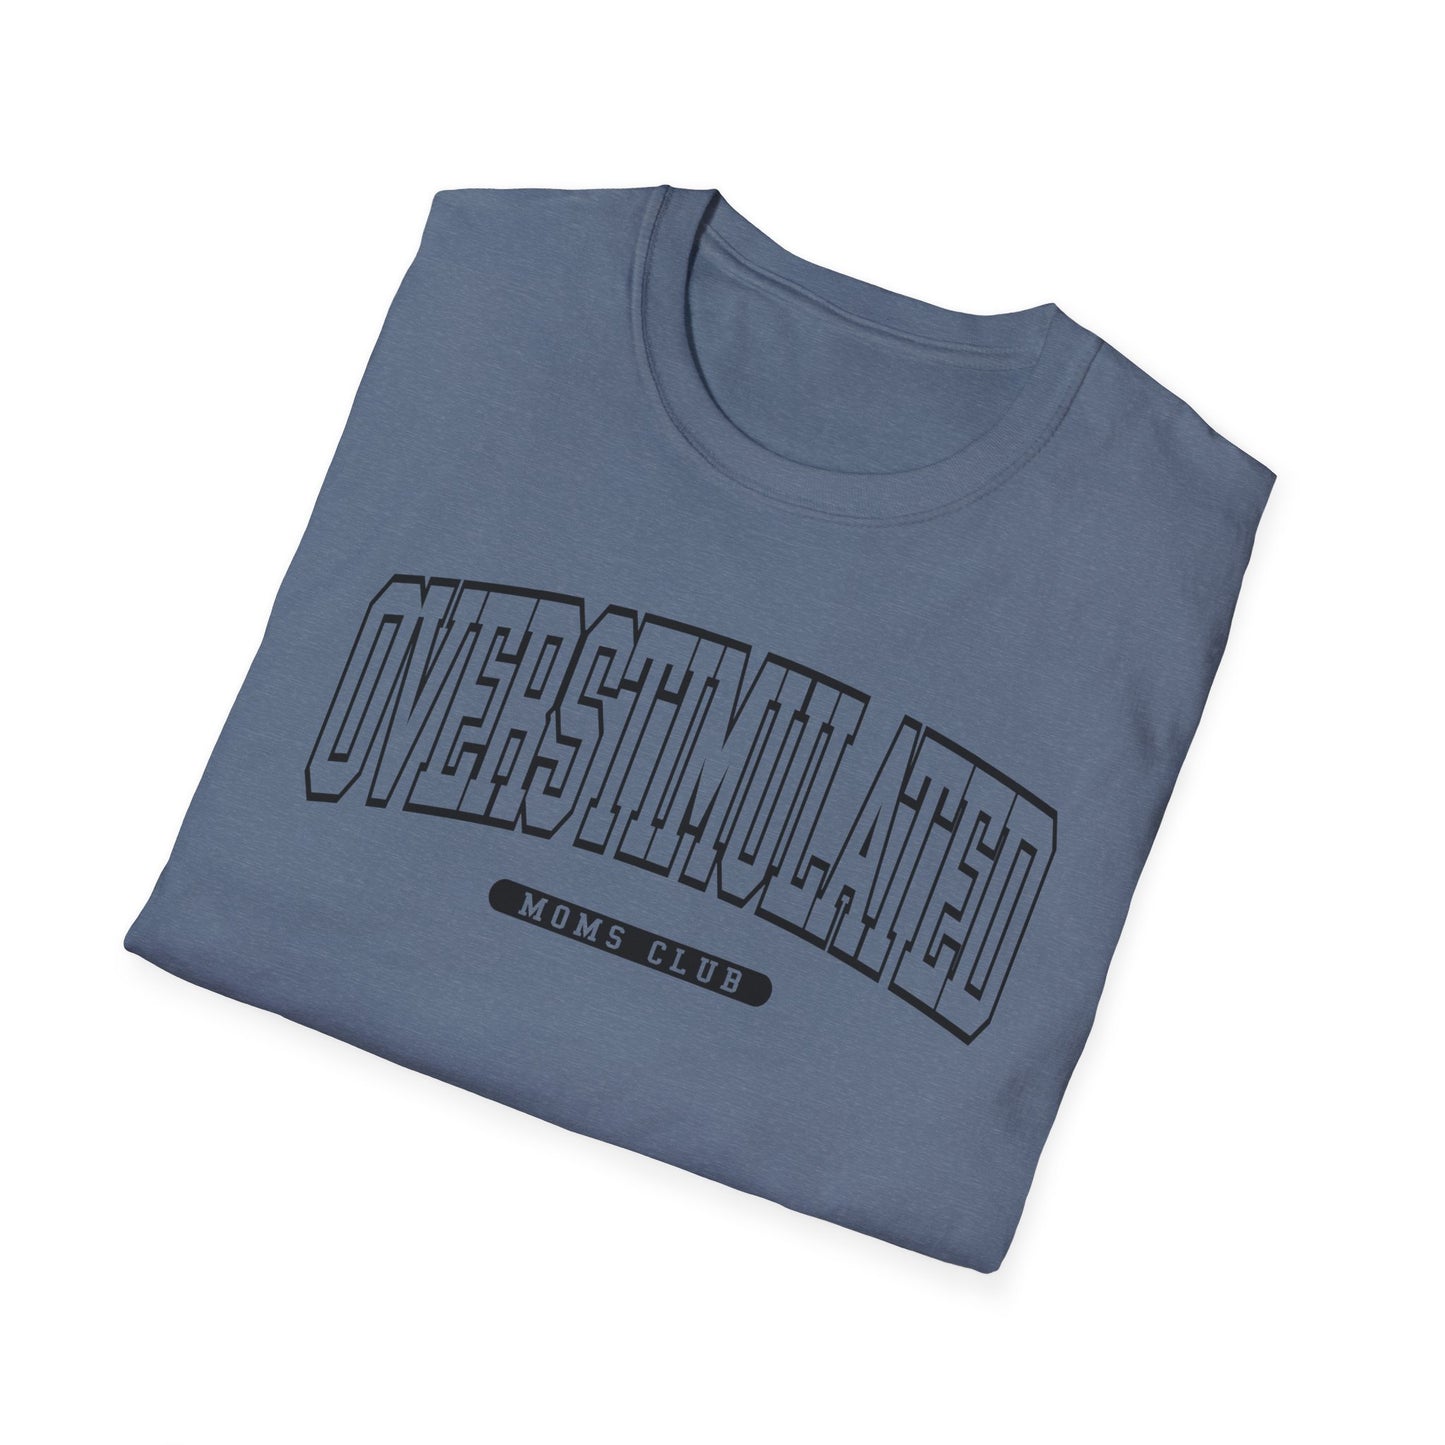 OVERSTIMULATED UNIVERSITY - Unisex Softstyle T-Shirt